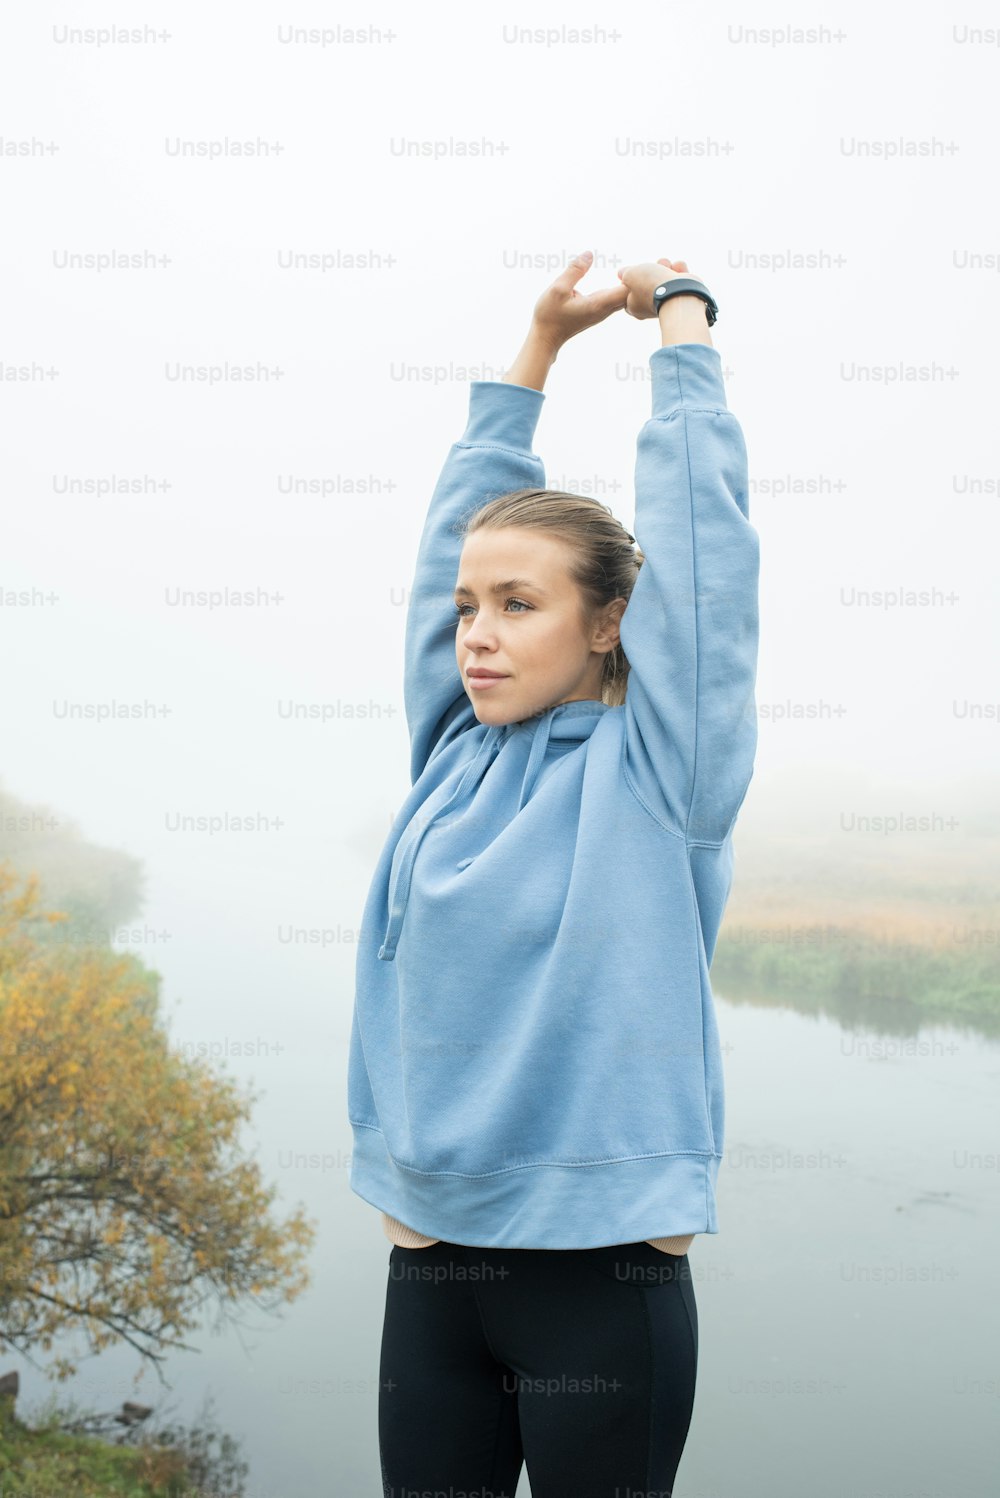 Giovane sportiva in forma in leggins neri e felpa blu con cappuccio che allunga le braccia sopra la testa mentre si esercita in un ambiente naturale in riva al fiume